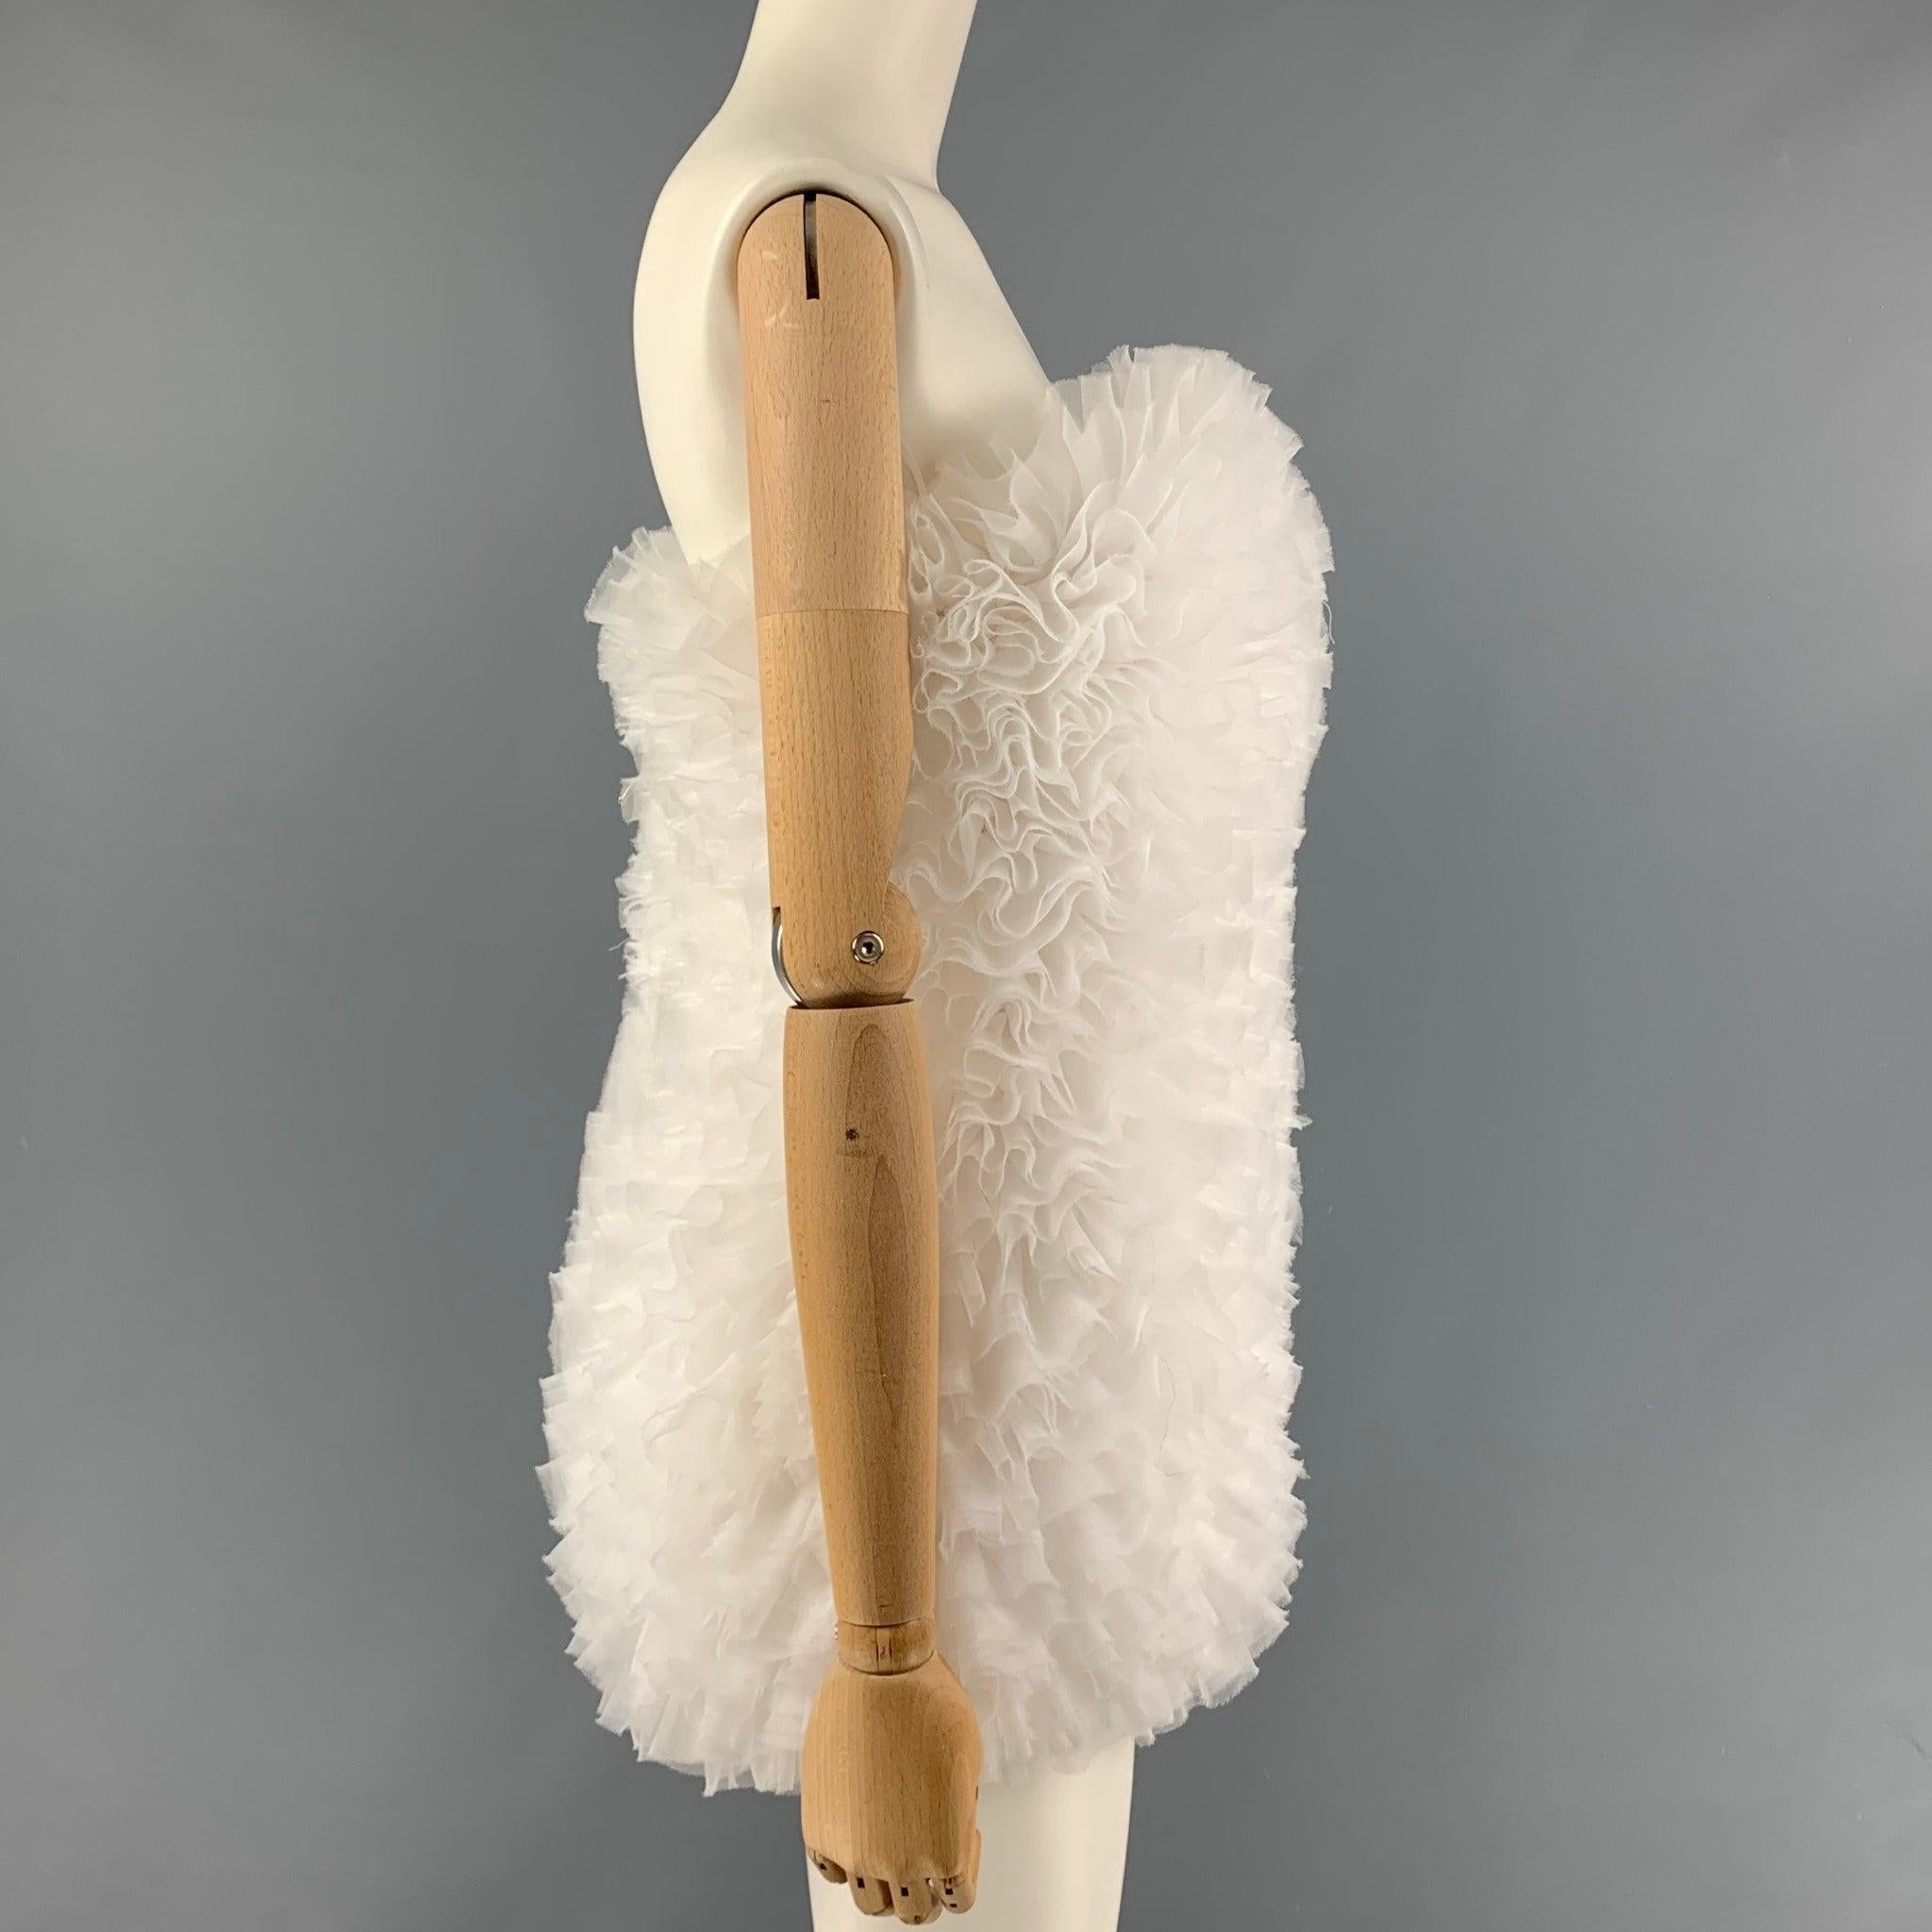 Le body EMILIO PUCCI x TOMO KOIZUMI se compose d'un mélange de polyester et de tulle blanc à volants et d'une doublure en satin imprimé Vetrate d'Emilio Pucci. Il présente un motif de tulle tourbillonnant arrangé, des détails de crochets et de